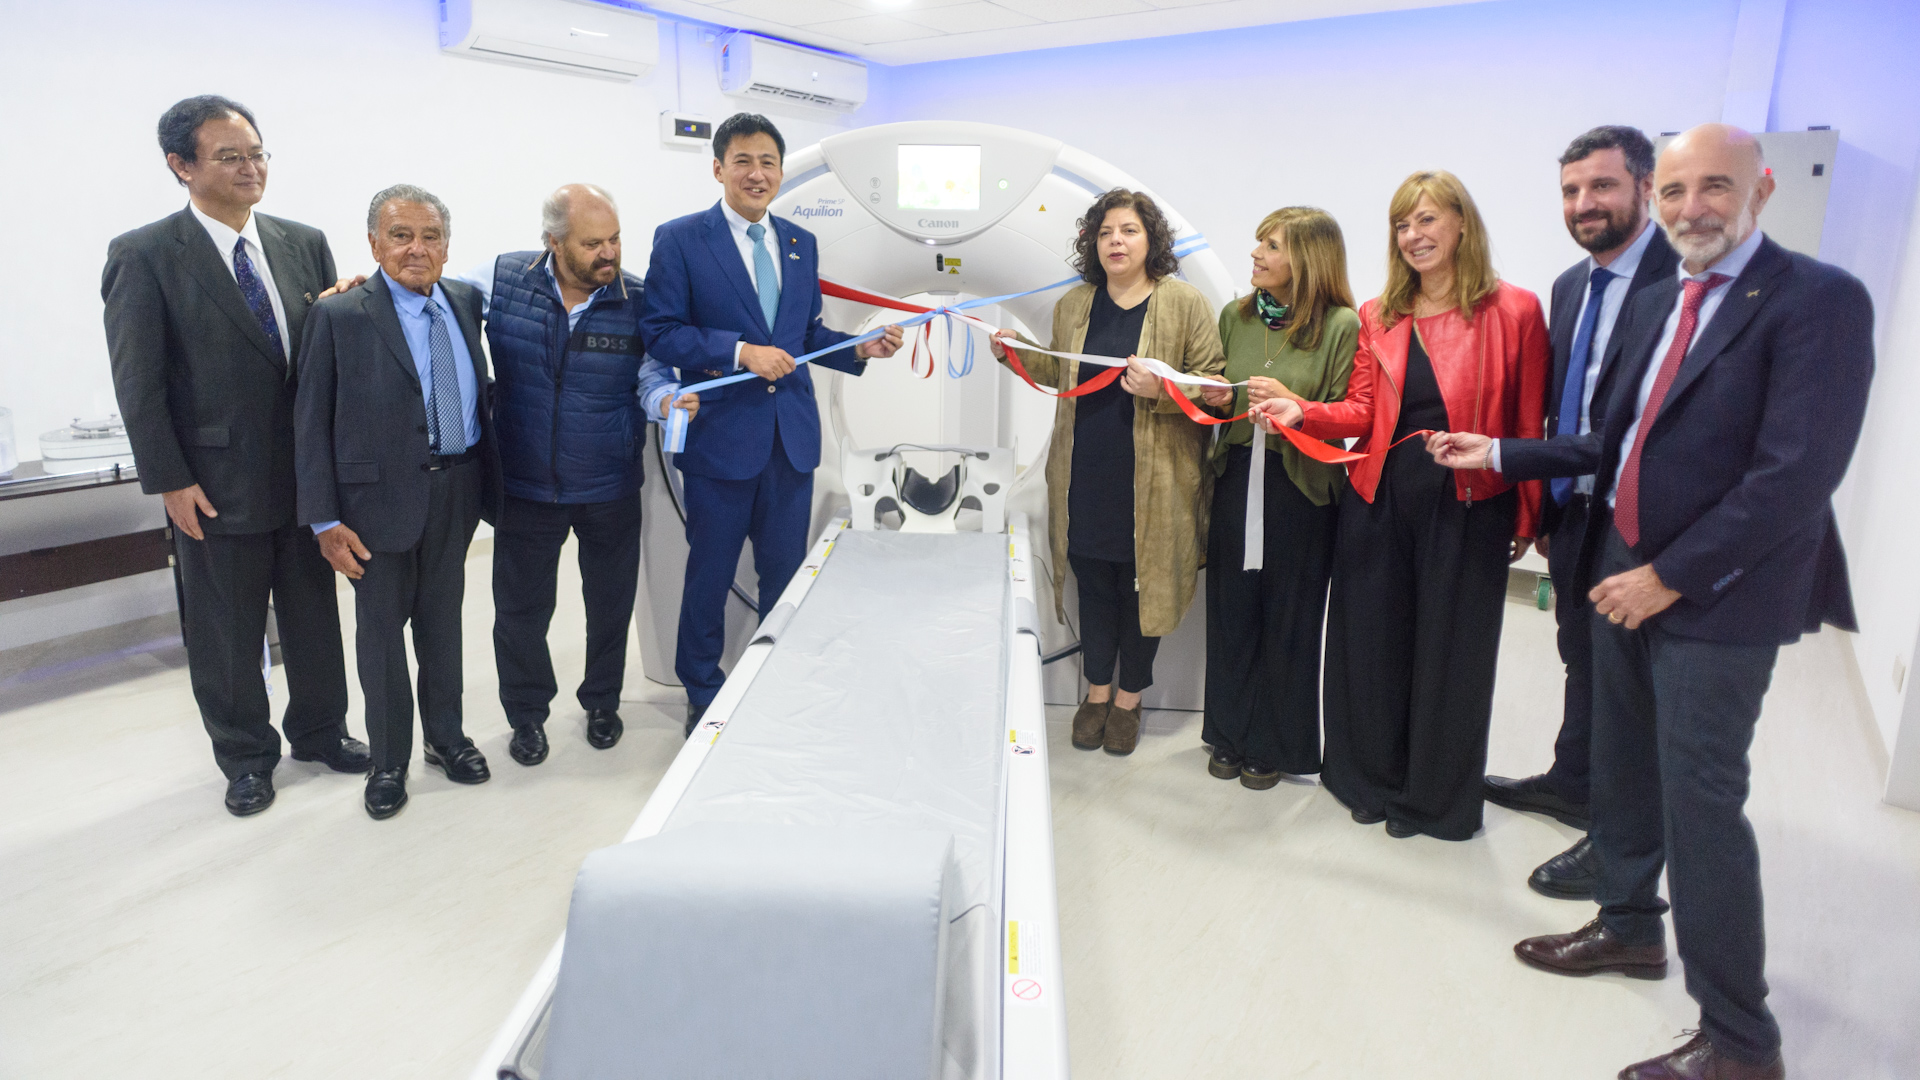 El vicecanciller de Japón participó de la inauguración de un tomógrafo computarizado en el Hospital Eurnekian de Ezeiza